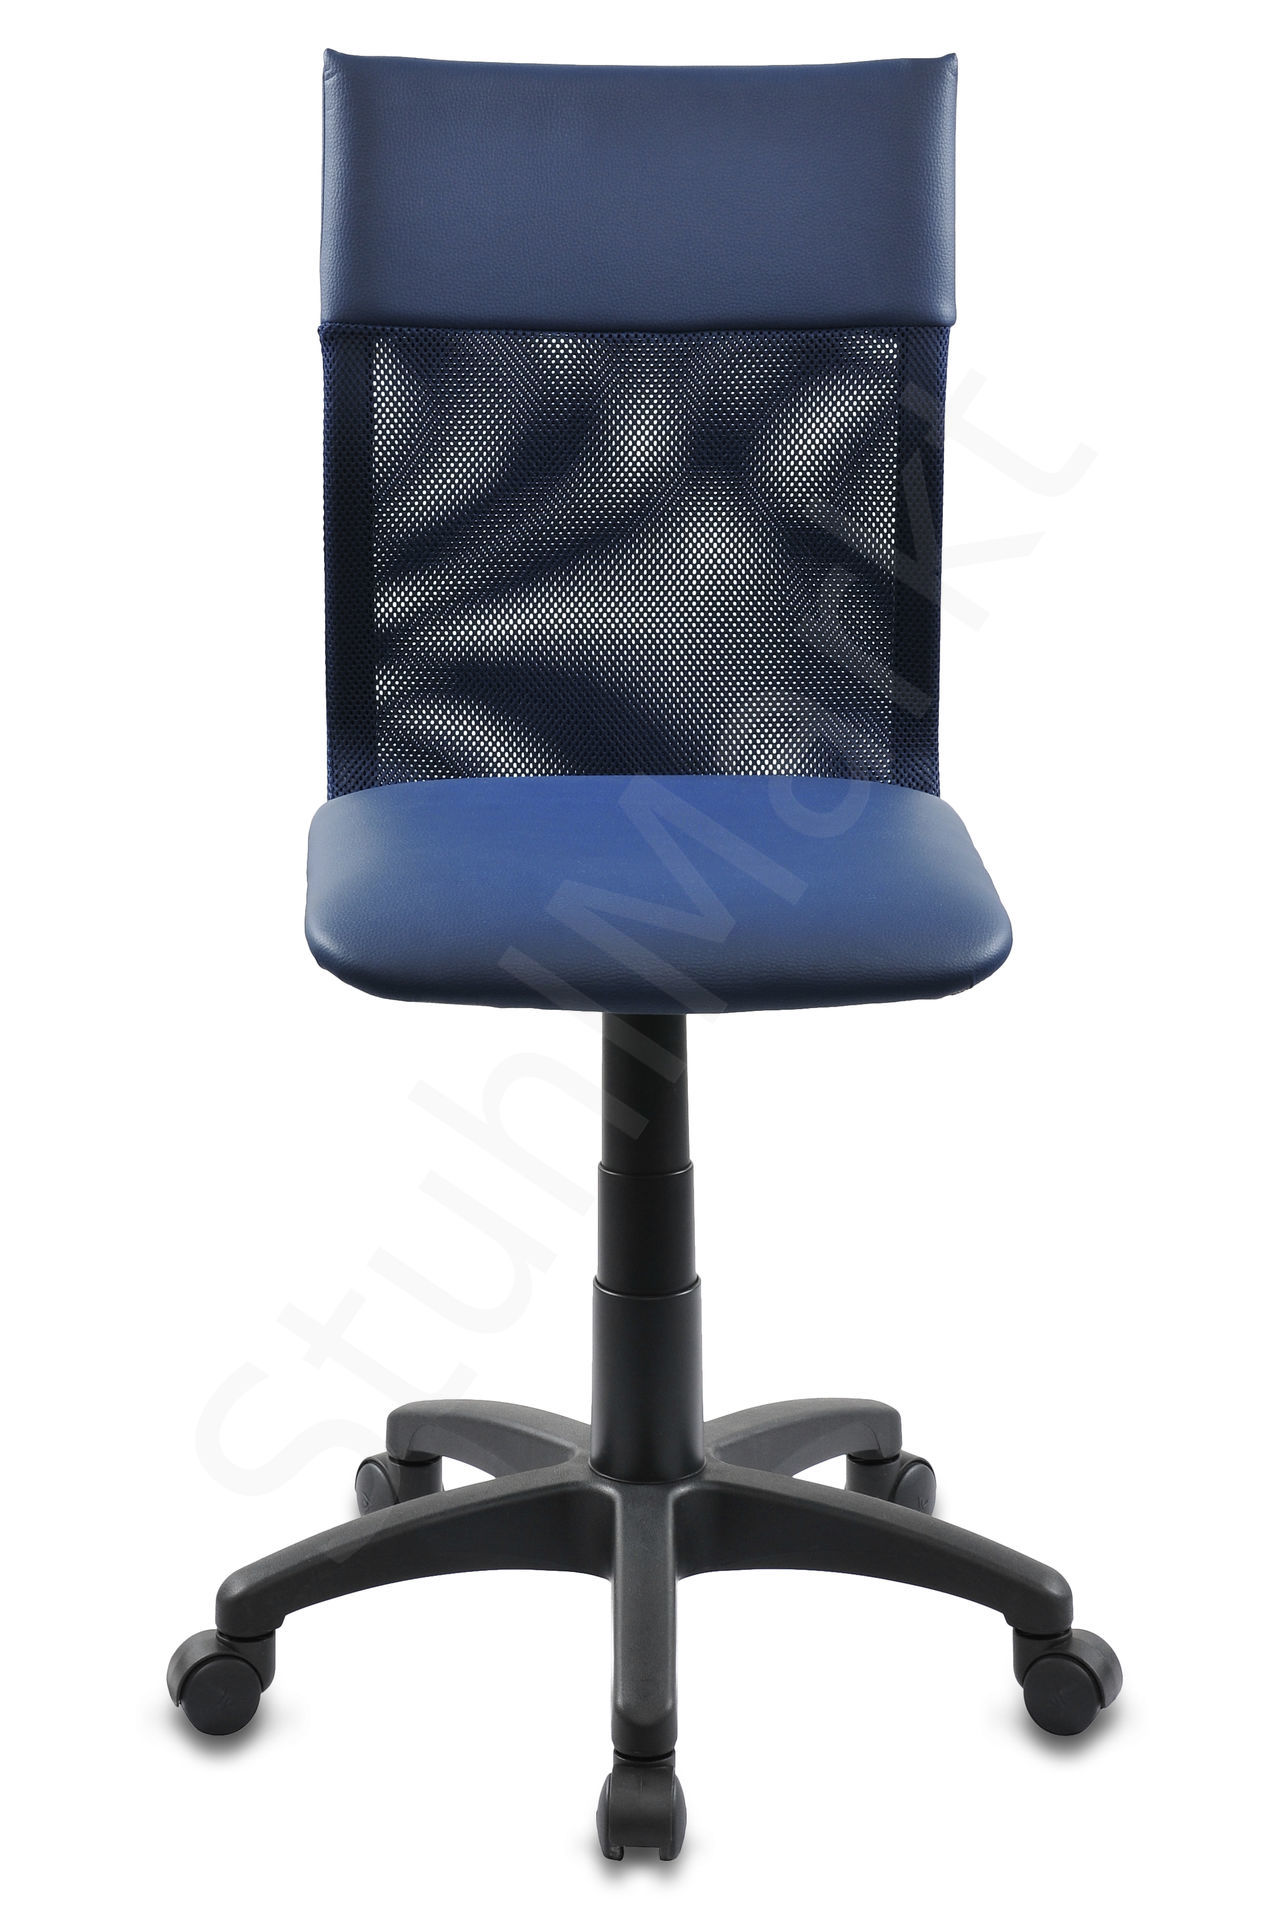  Кресло для персонала Бюрократ 399 синее 6213